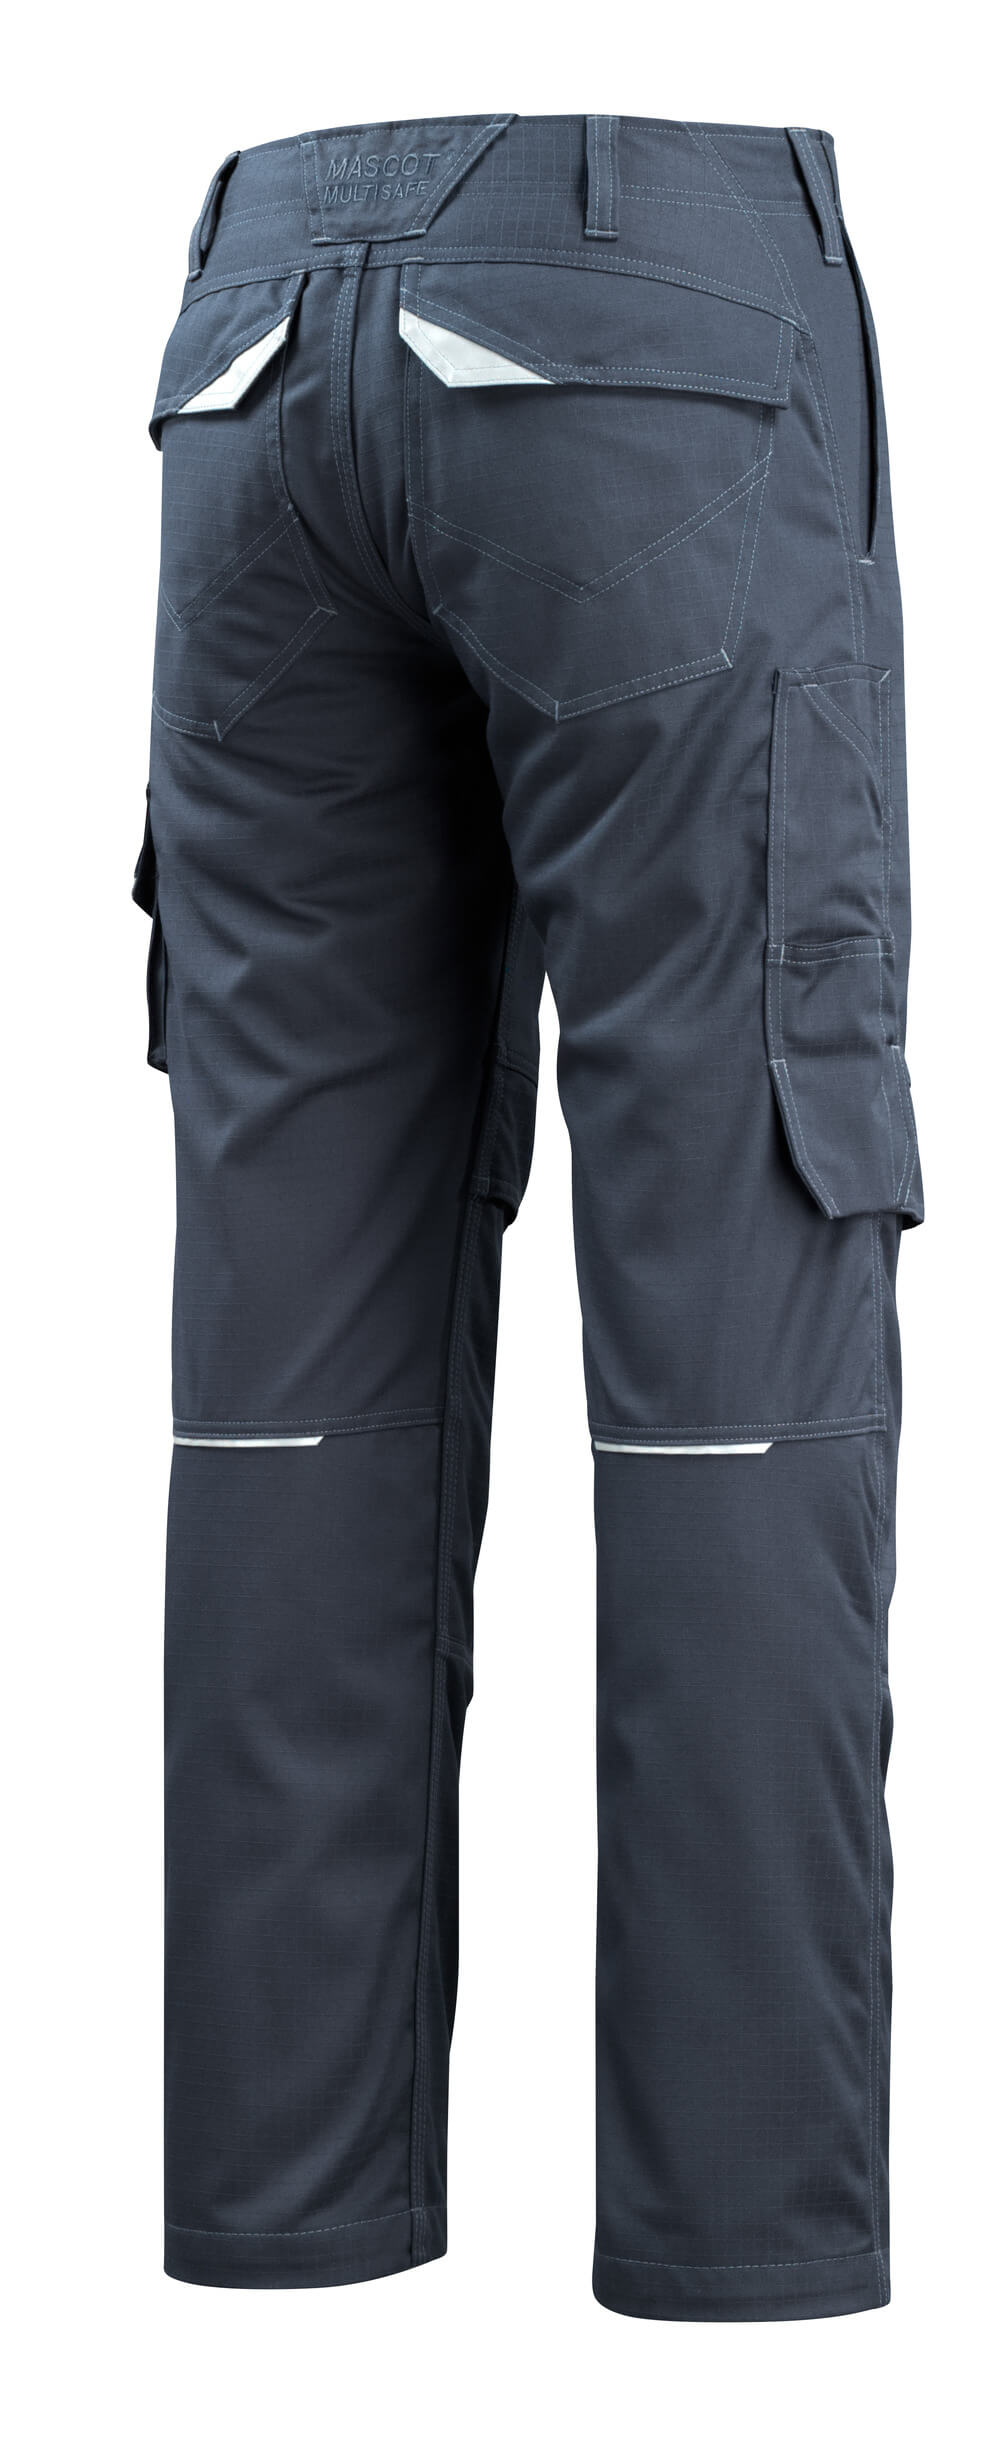 MASCOT® MULTISAFE Hose mit Knietaschen »Arosa« Gr. 76/C46, schwarzblau - bekommst Du bei ★ HUG Technik ✓